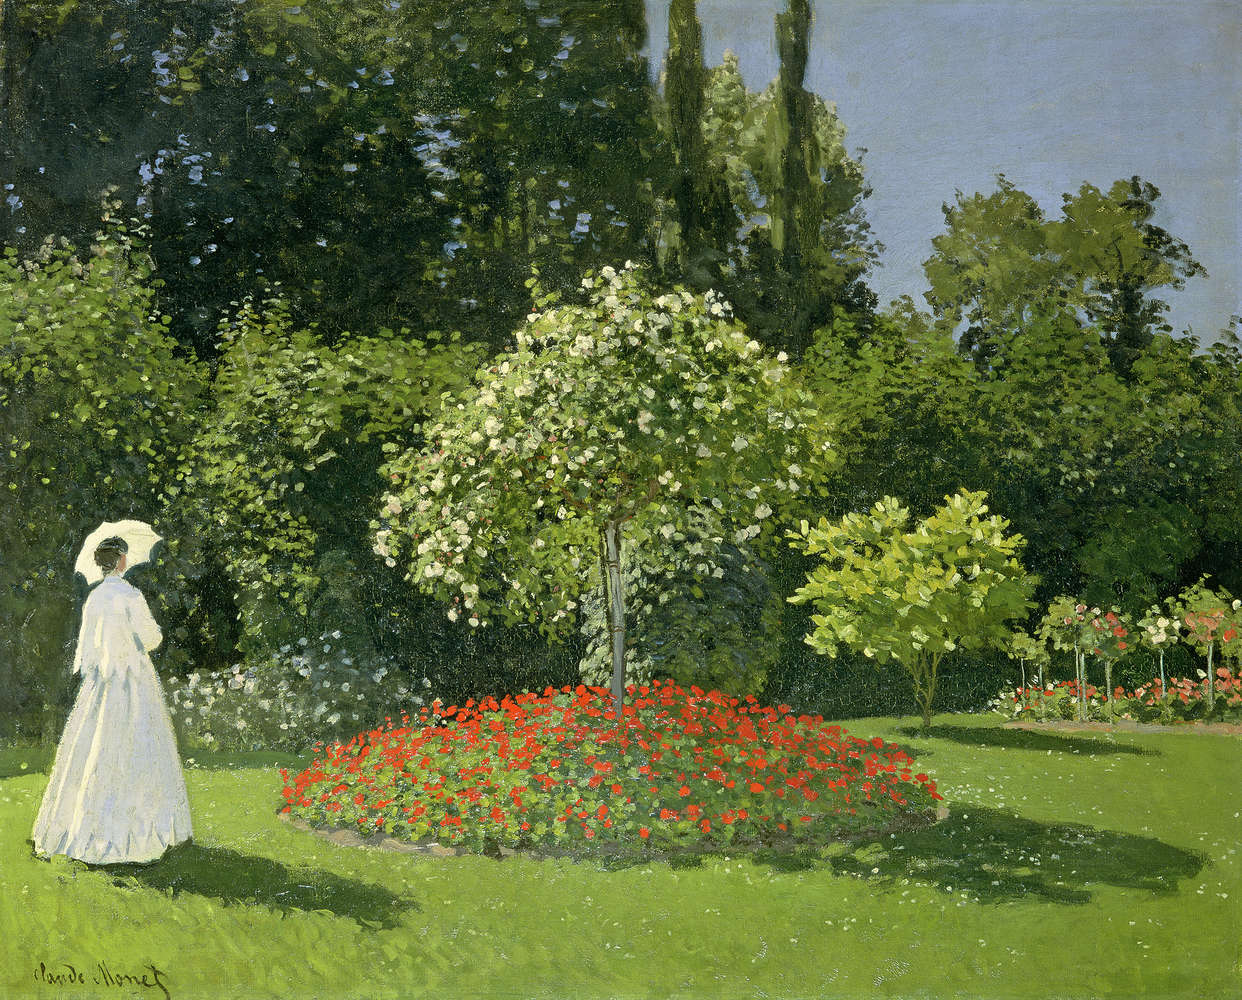             Muurschildering "Vrouw in de tuin" van Claude Monet
        